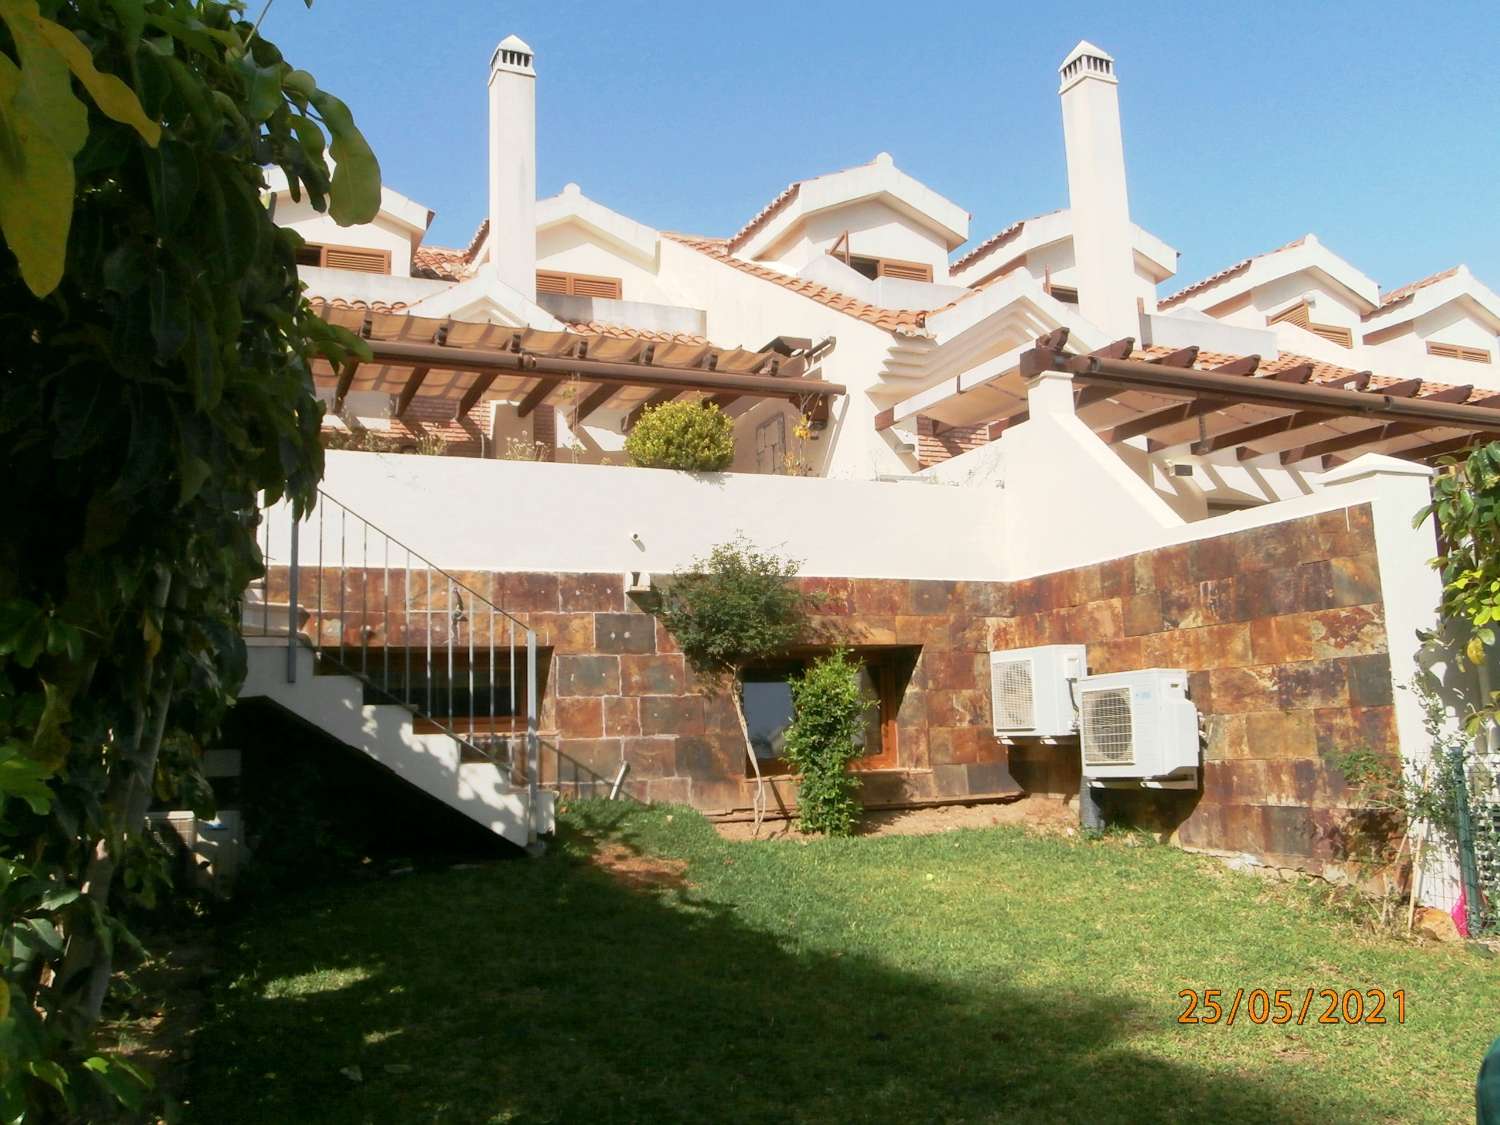 Wunderschönes Stadthaus in der renommierten Urbanisation Reserva del Higueron, Benalmadena Costa.